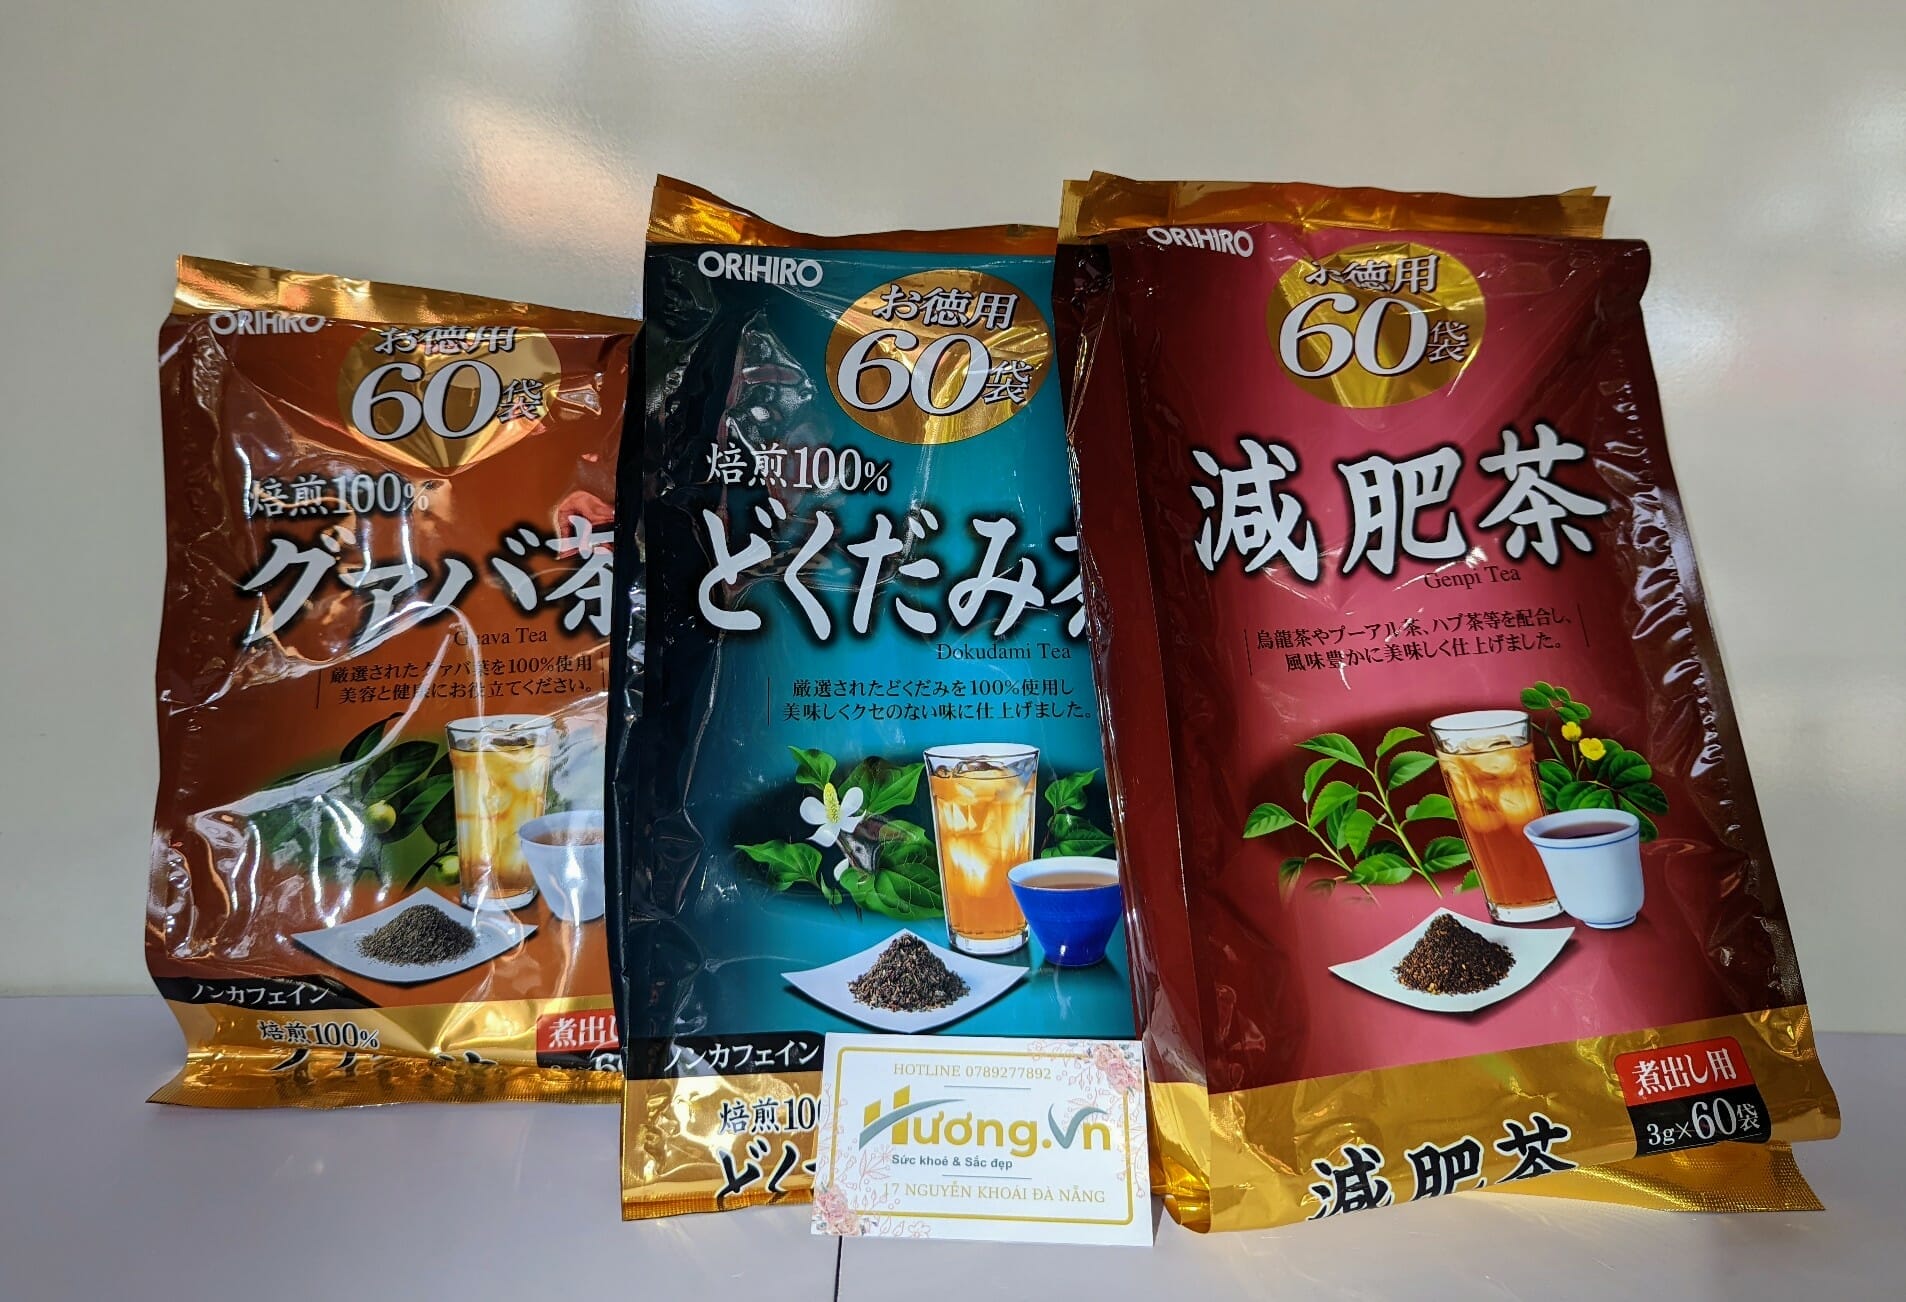 hình ảnh 3 loại trà Ochihiro